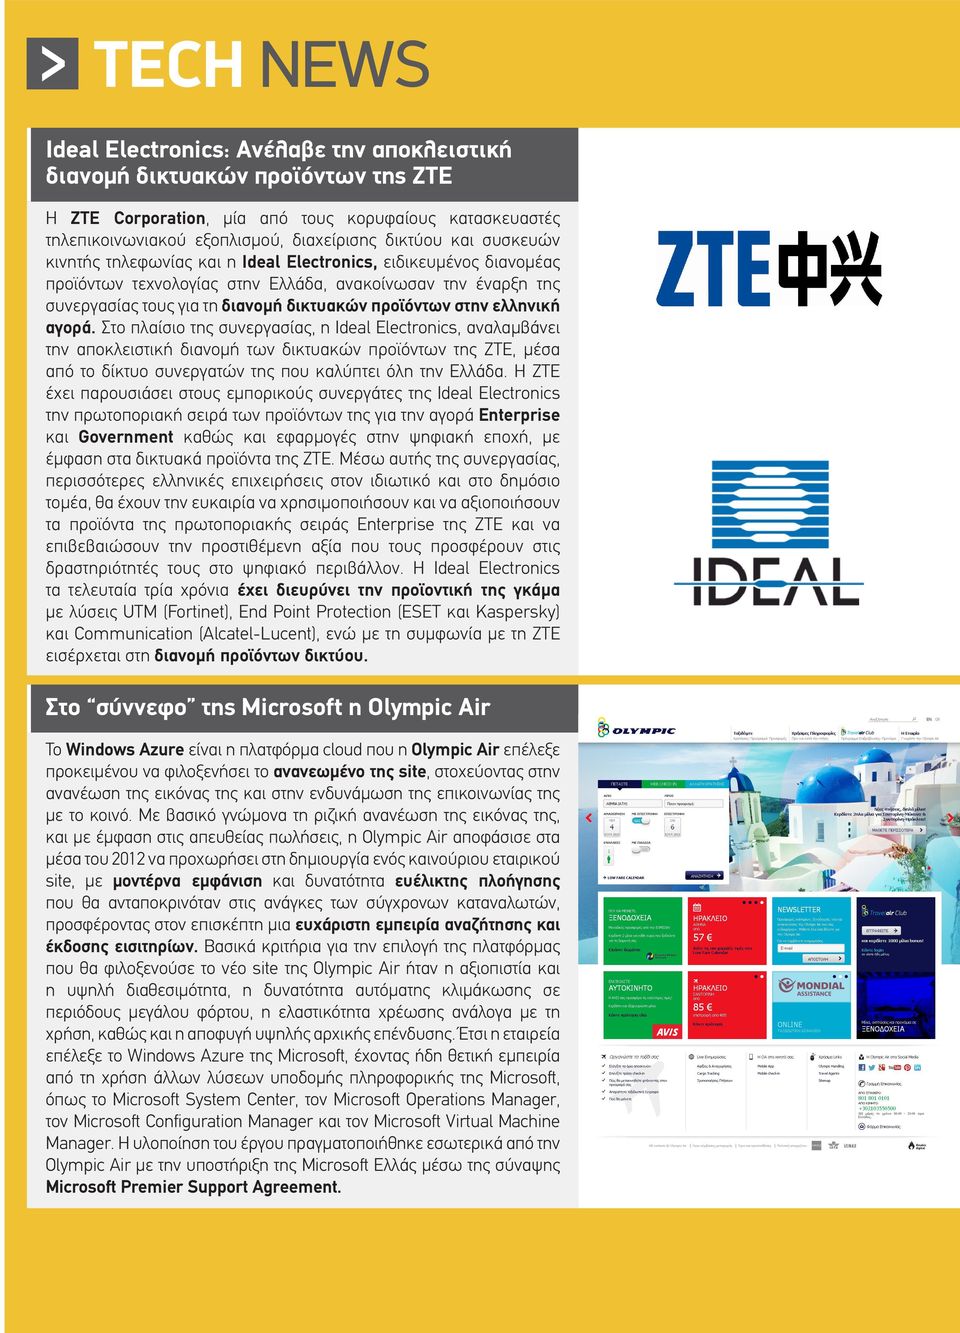 ελληνική αγορά. Στο πλαίσιο της συνεργασίας, η Ideal Electronics, αναλαμβάνει την αποκλειστική διανομή των δικτυακών προϊόντων της ΖΤΕ, μέσα από το δίκτυο συνεργατών της που καλύπτει όλη την Ελλάδα.